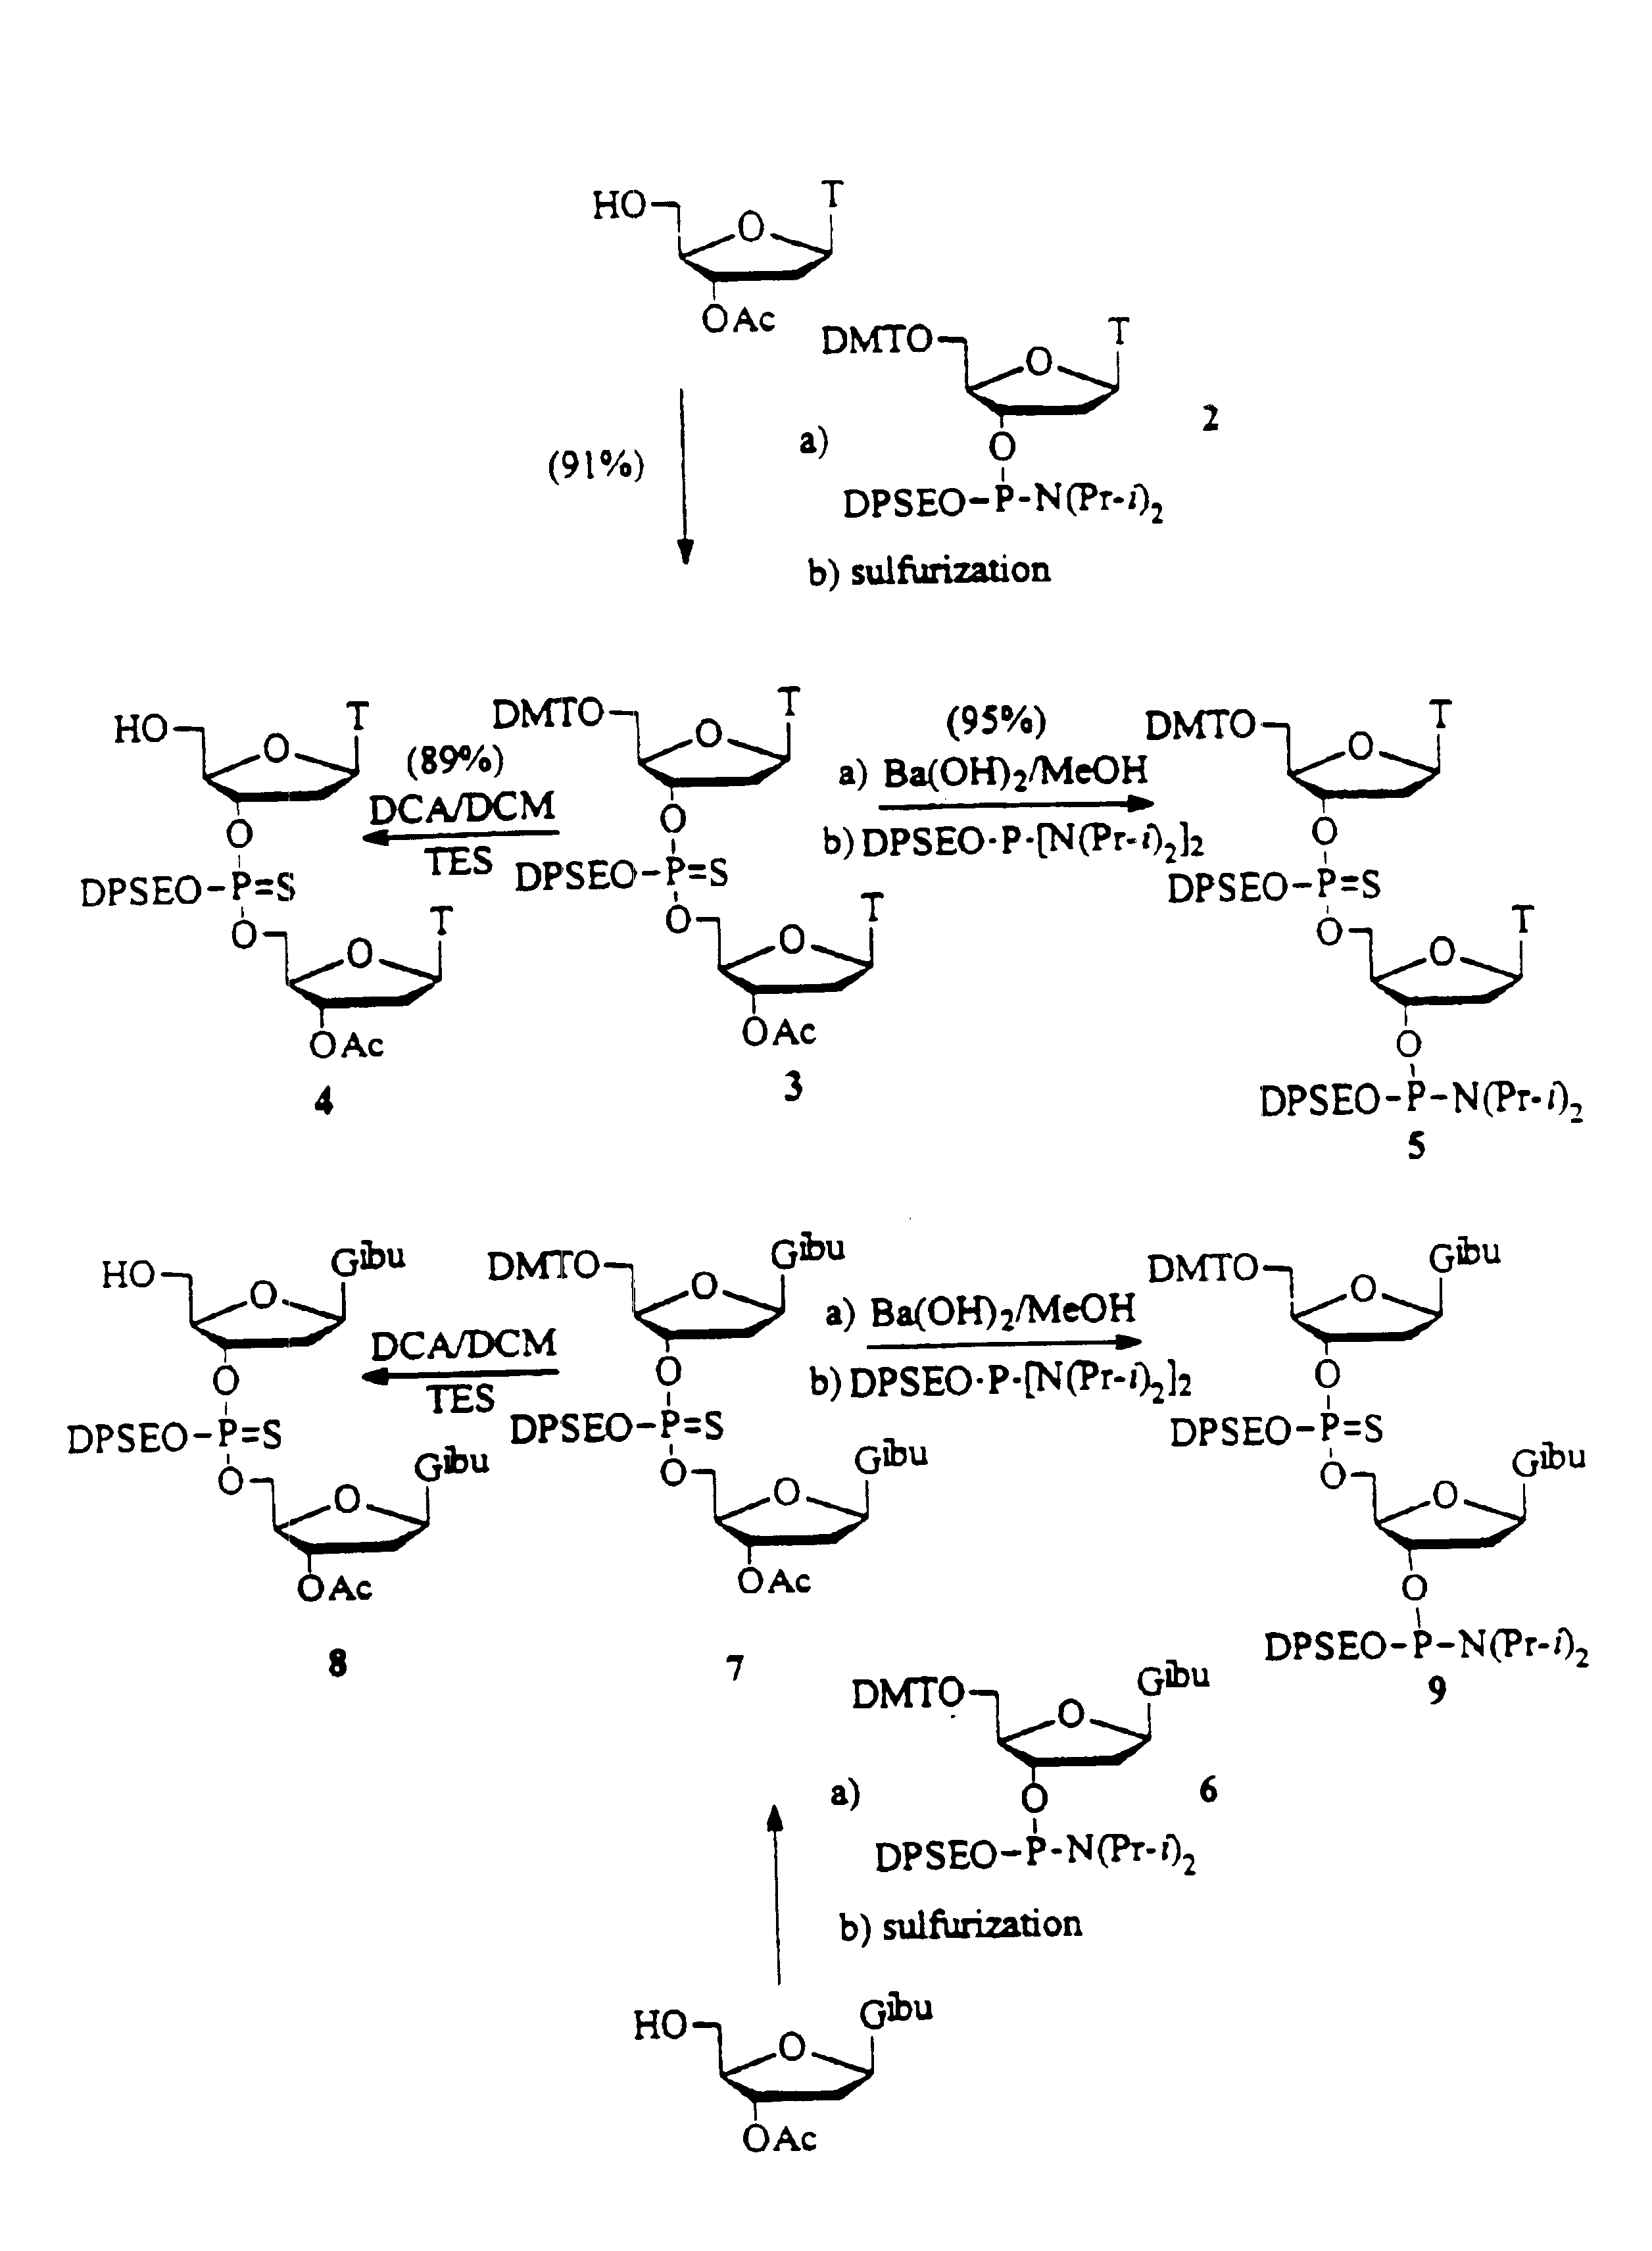 Synthesis of oligonucleotides